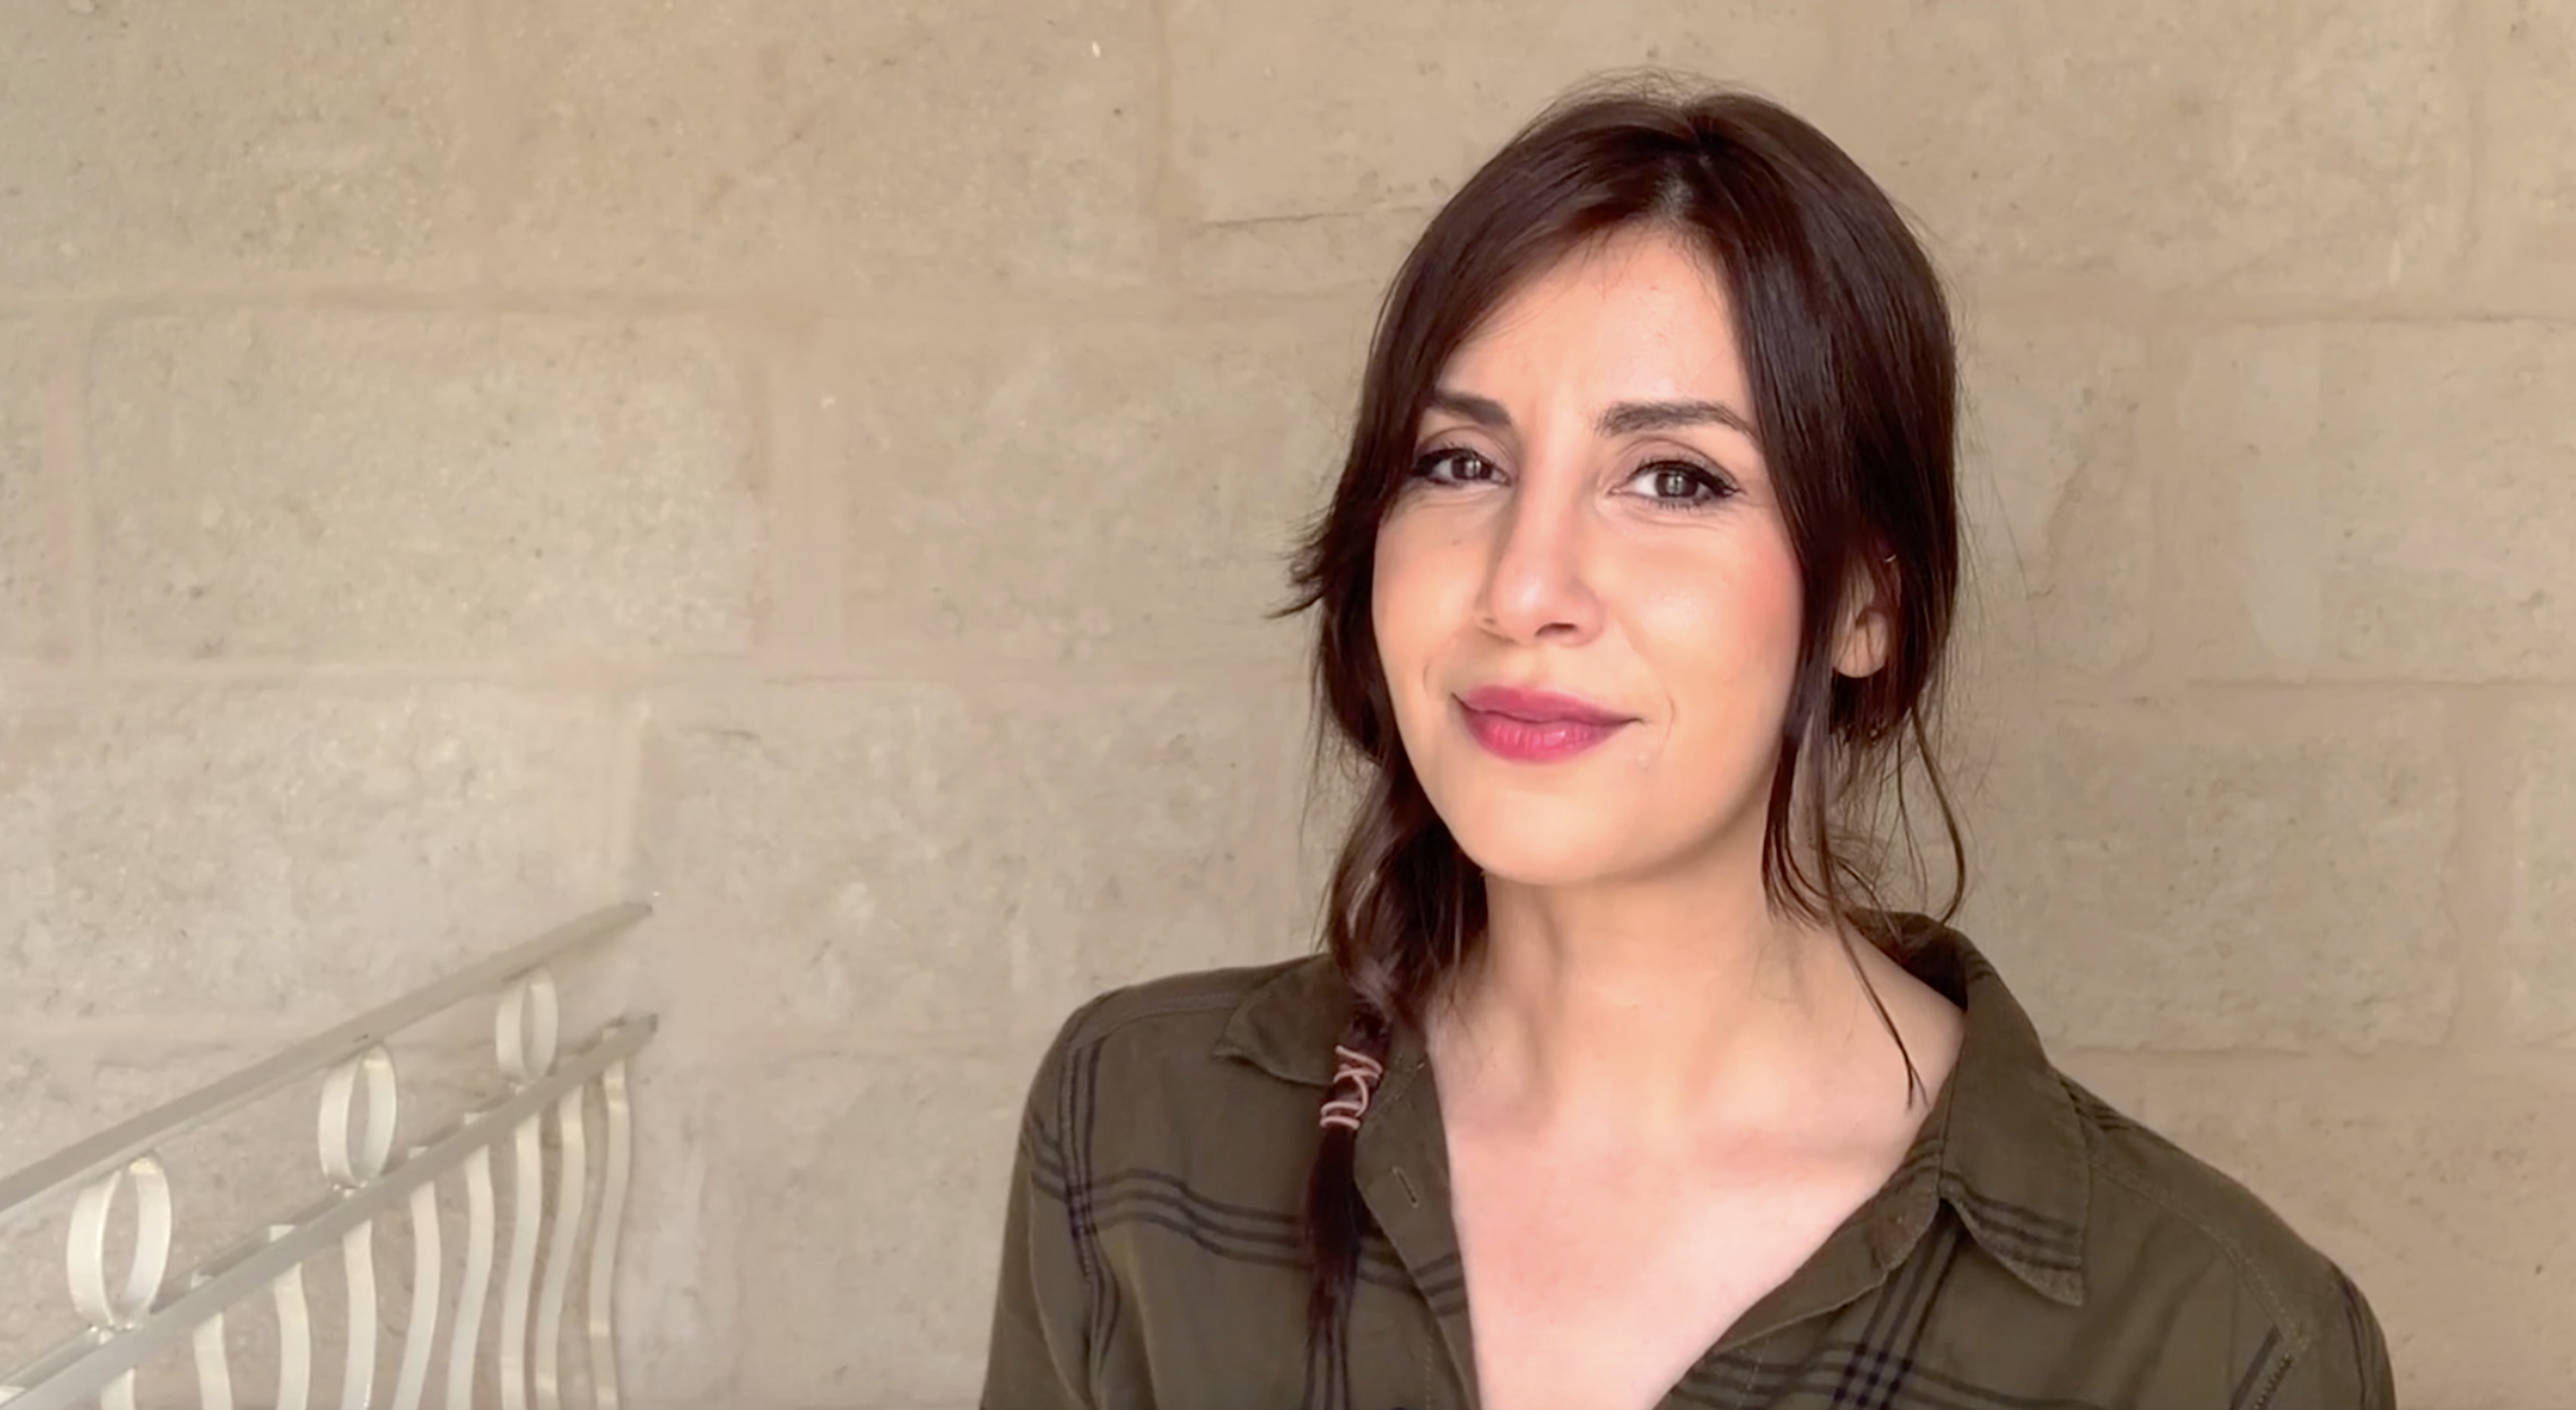 Sou Boujloud steht vor einer braunen Wand und weist auf das Thema ihrer Kolumne hin: Trailer.